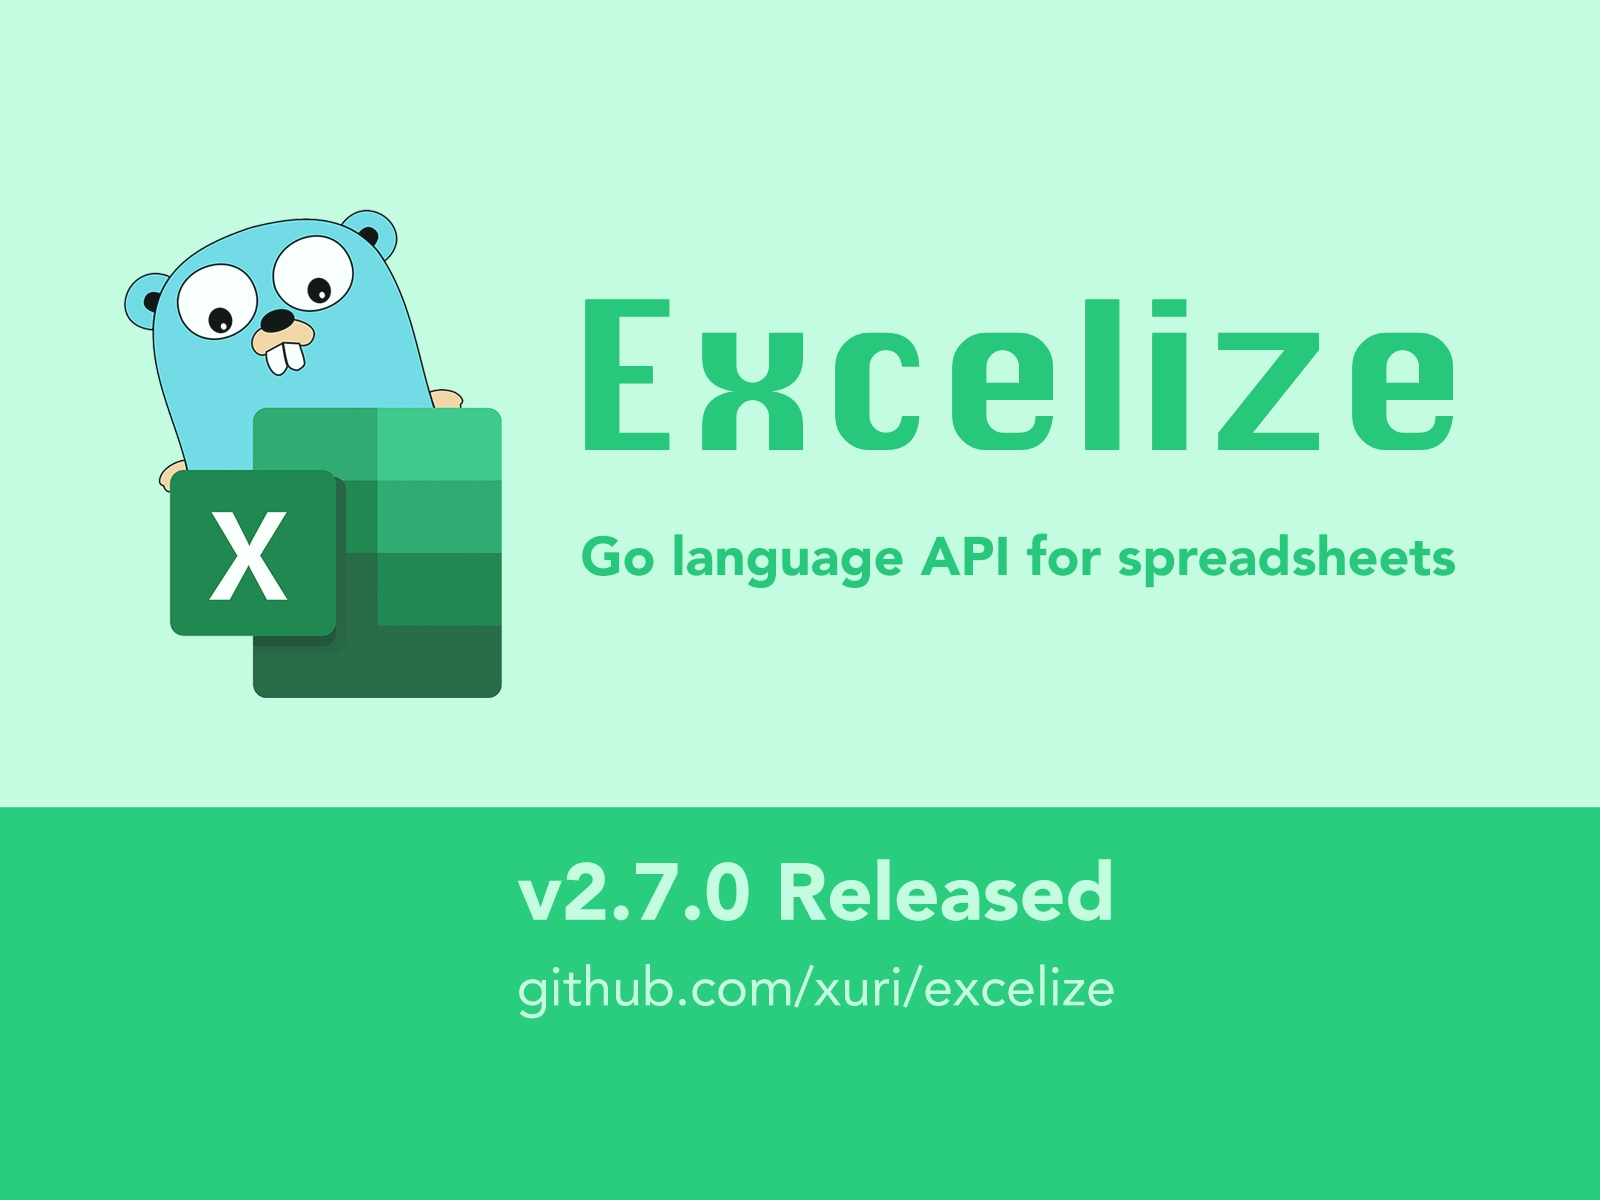 Go 言語スプレッドシートライブラリ：Excelize 2.7.0 がリリースされました